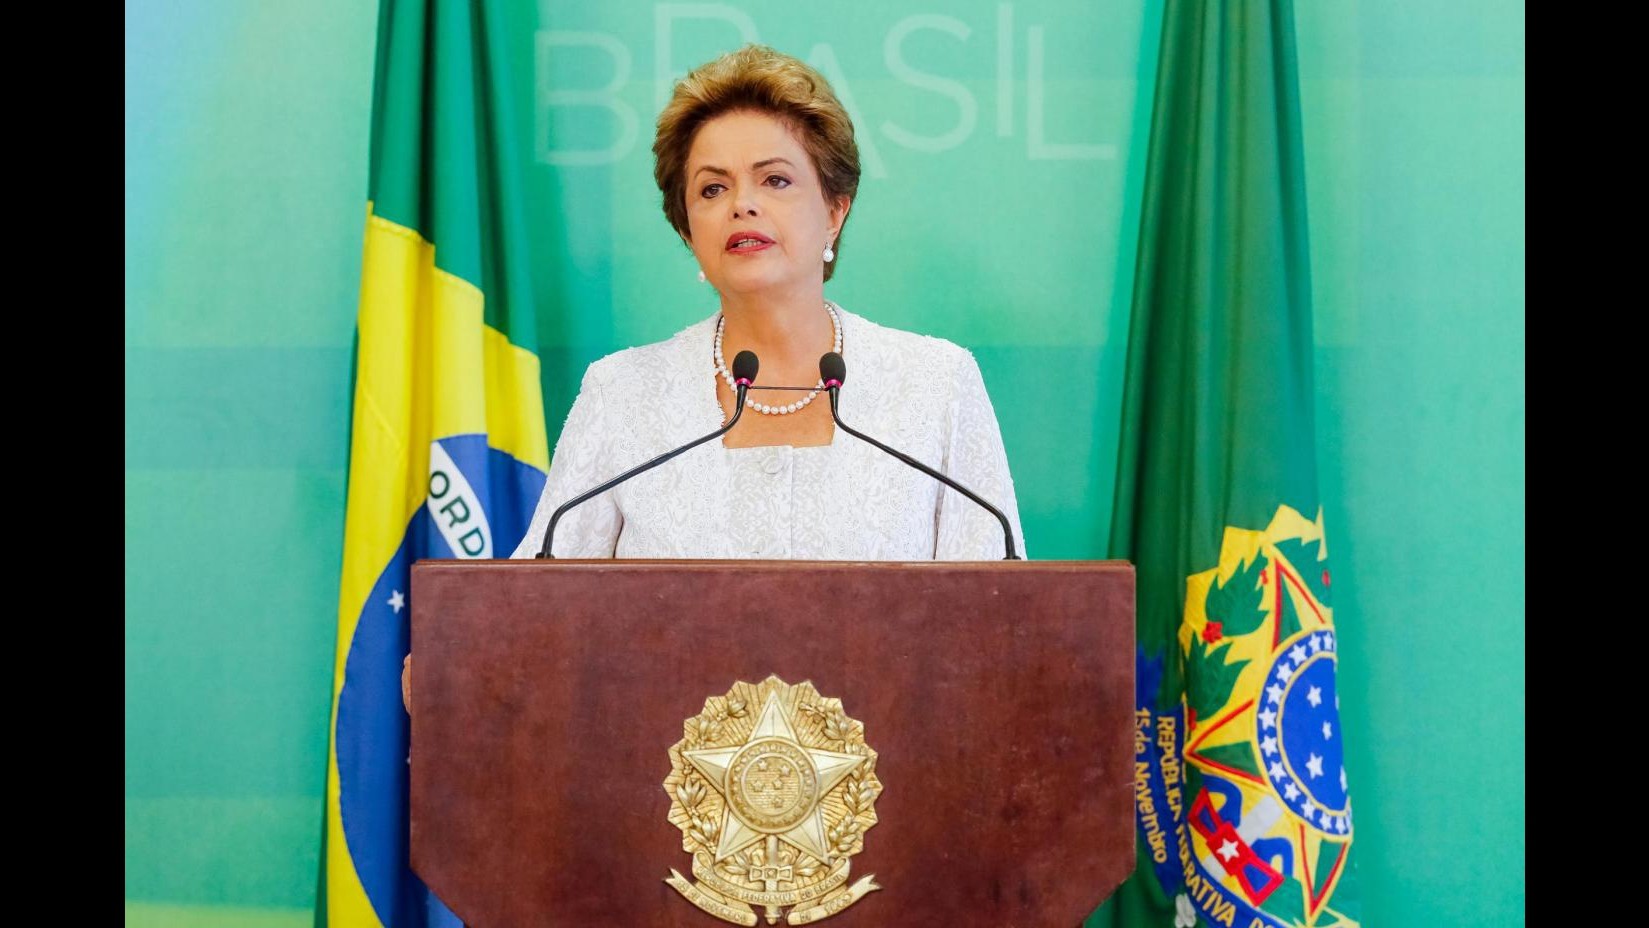 Brasile, Corte conti boccia bilancio 2014:Rousseff rischia impeachment